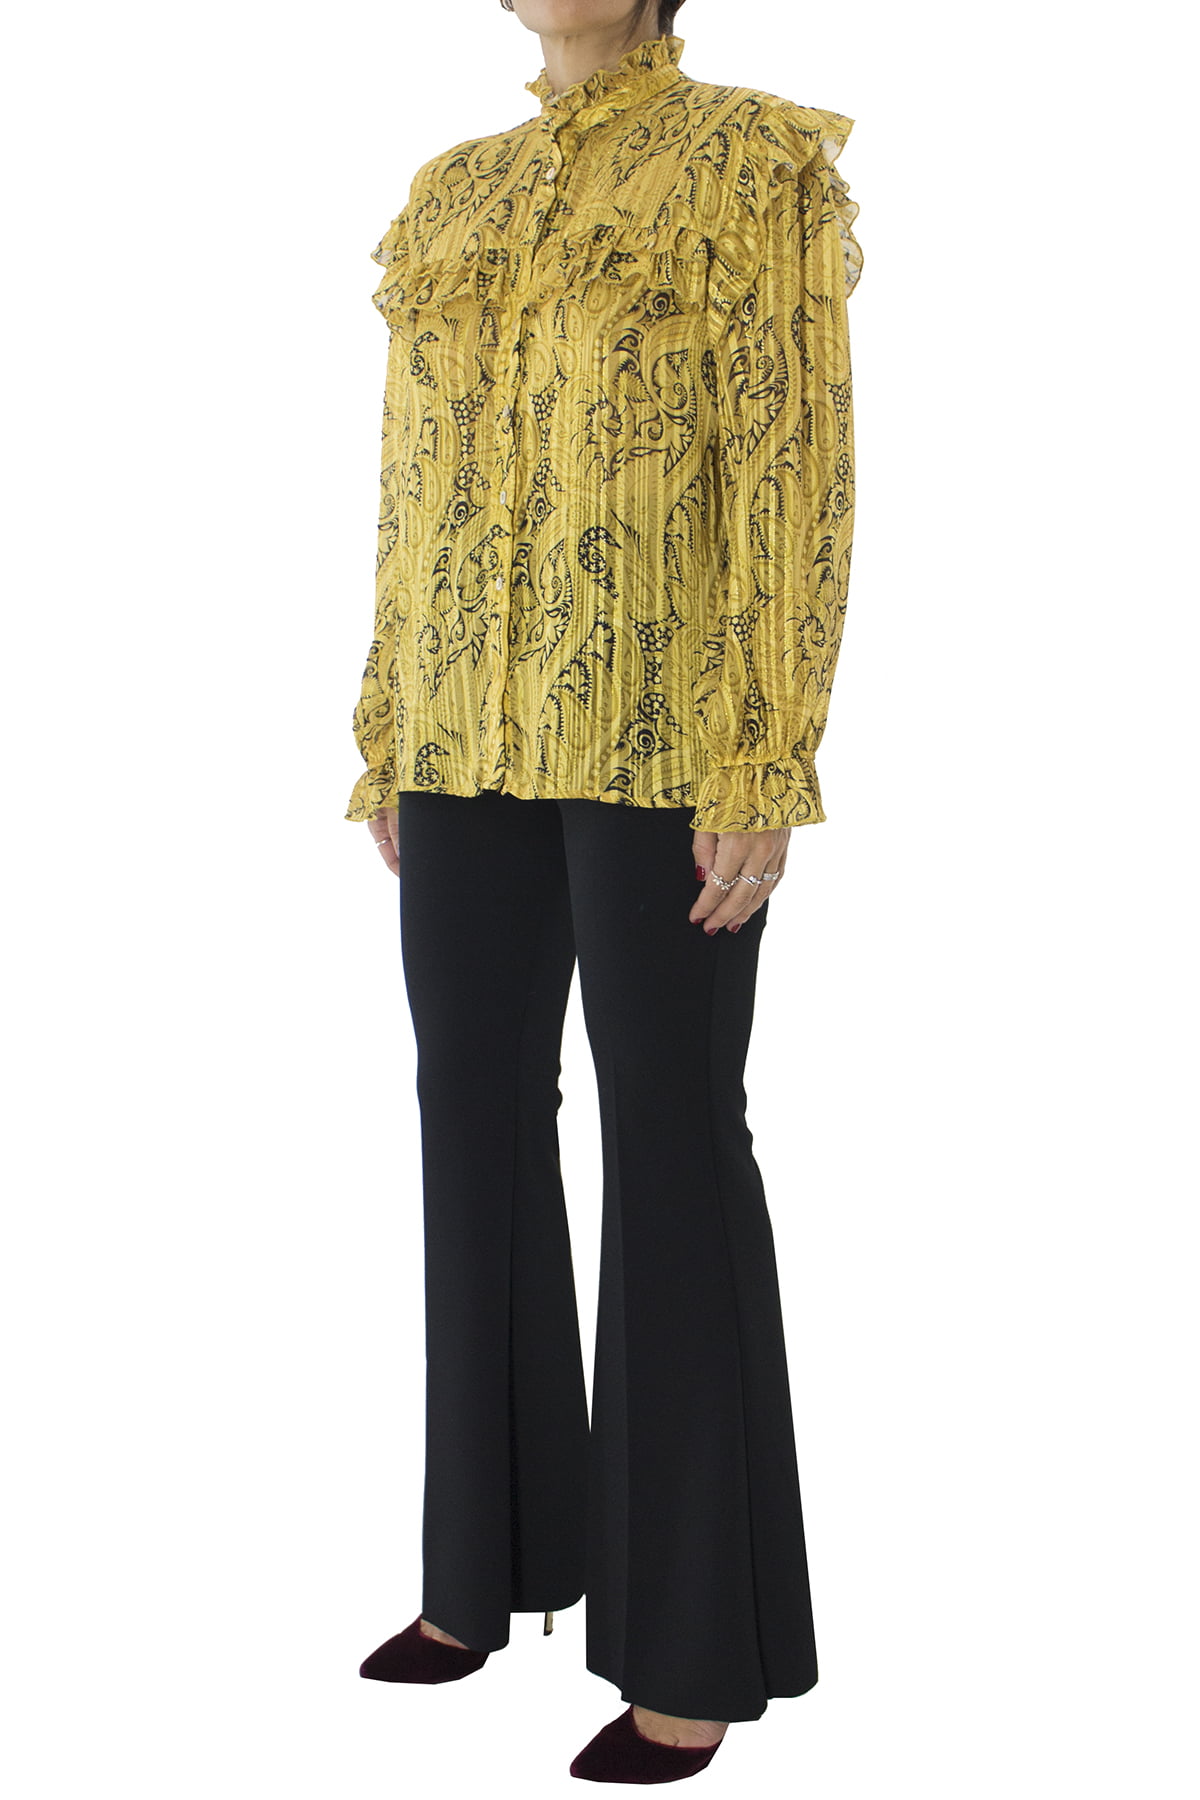 Camicia donna in fantasia paisley e fili lurex oro mezzo collo con rouches e sul fondo maniche